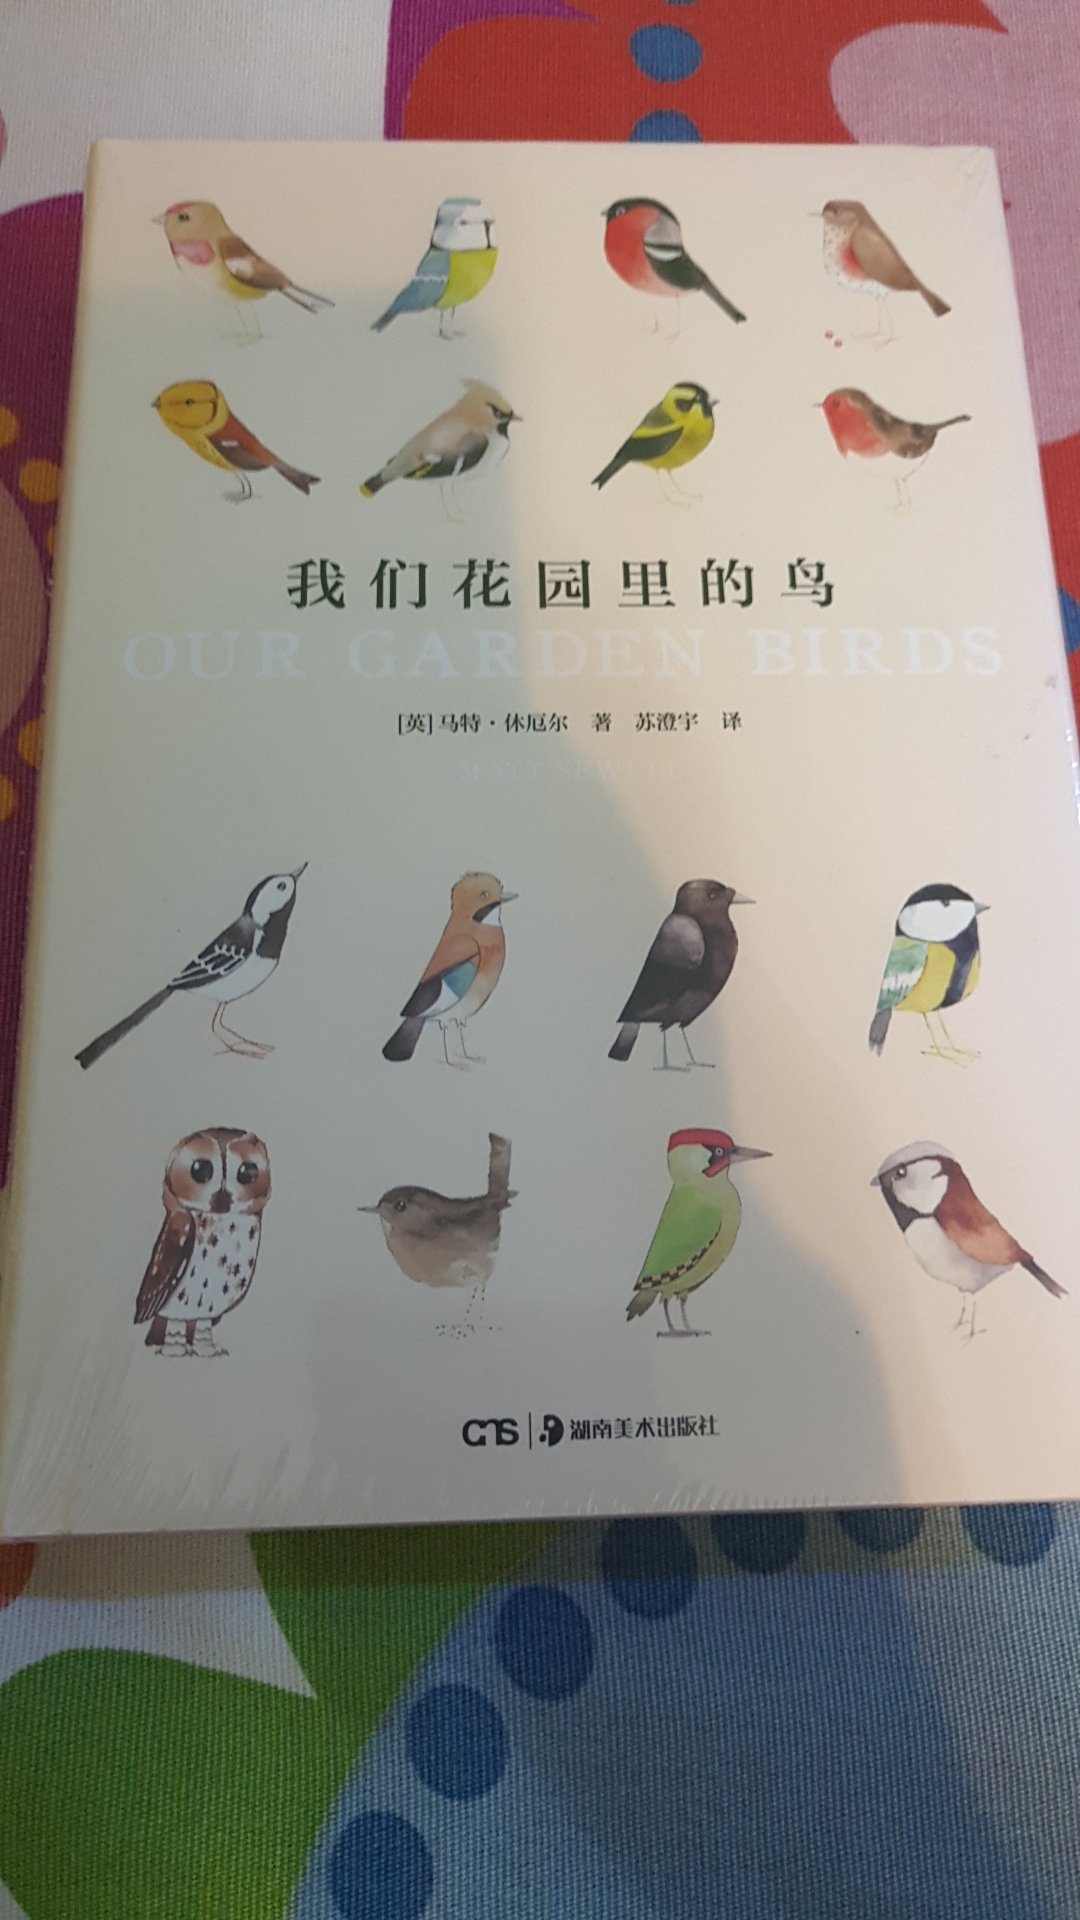 喜欢鸟，感觉应该是很有意思的书